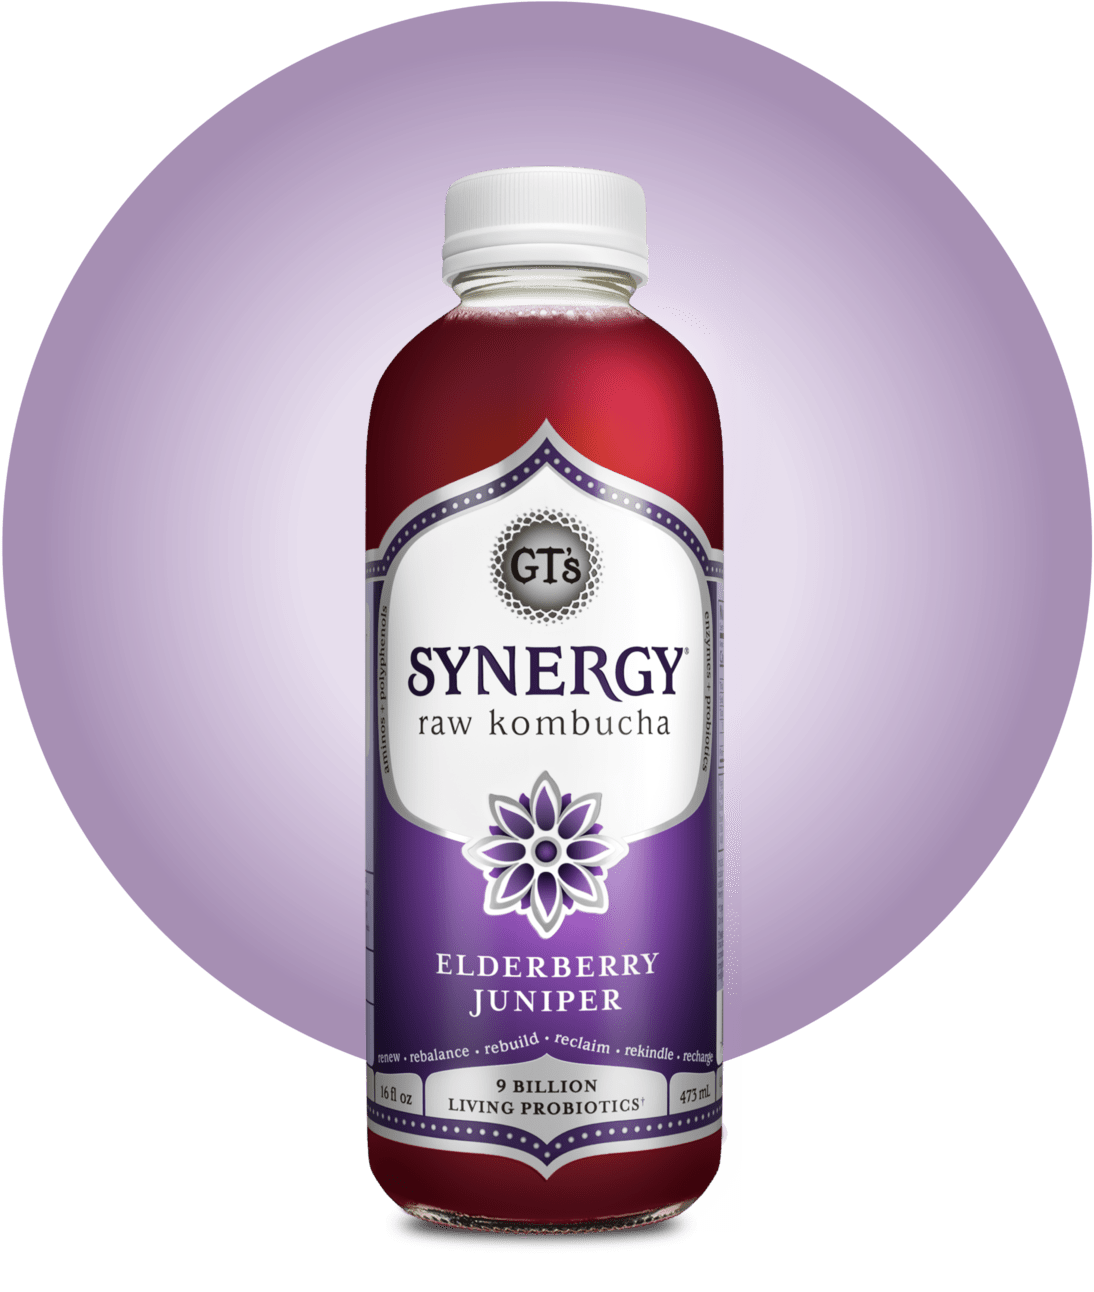 Elderberry Juniper SYNERGY Raw Kombucha Bottle